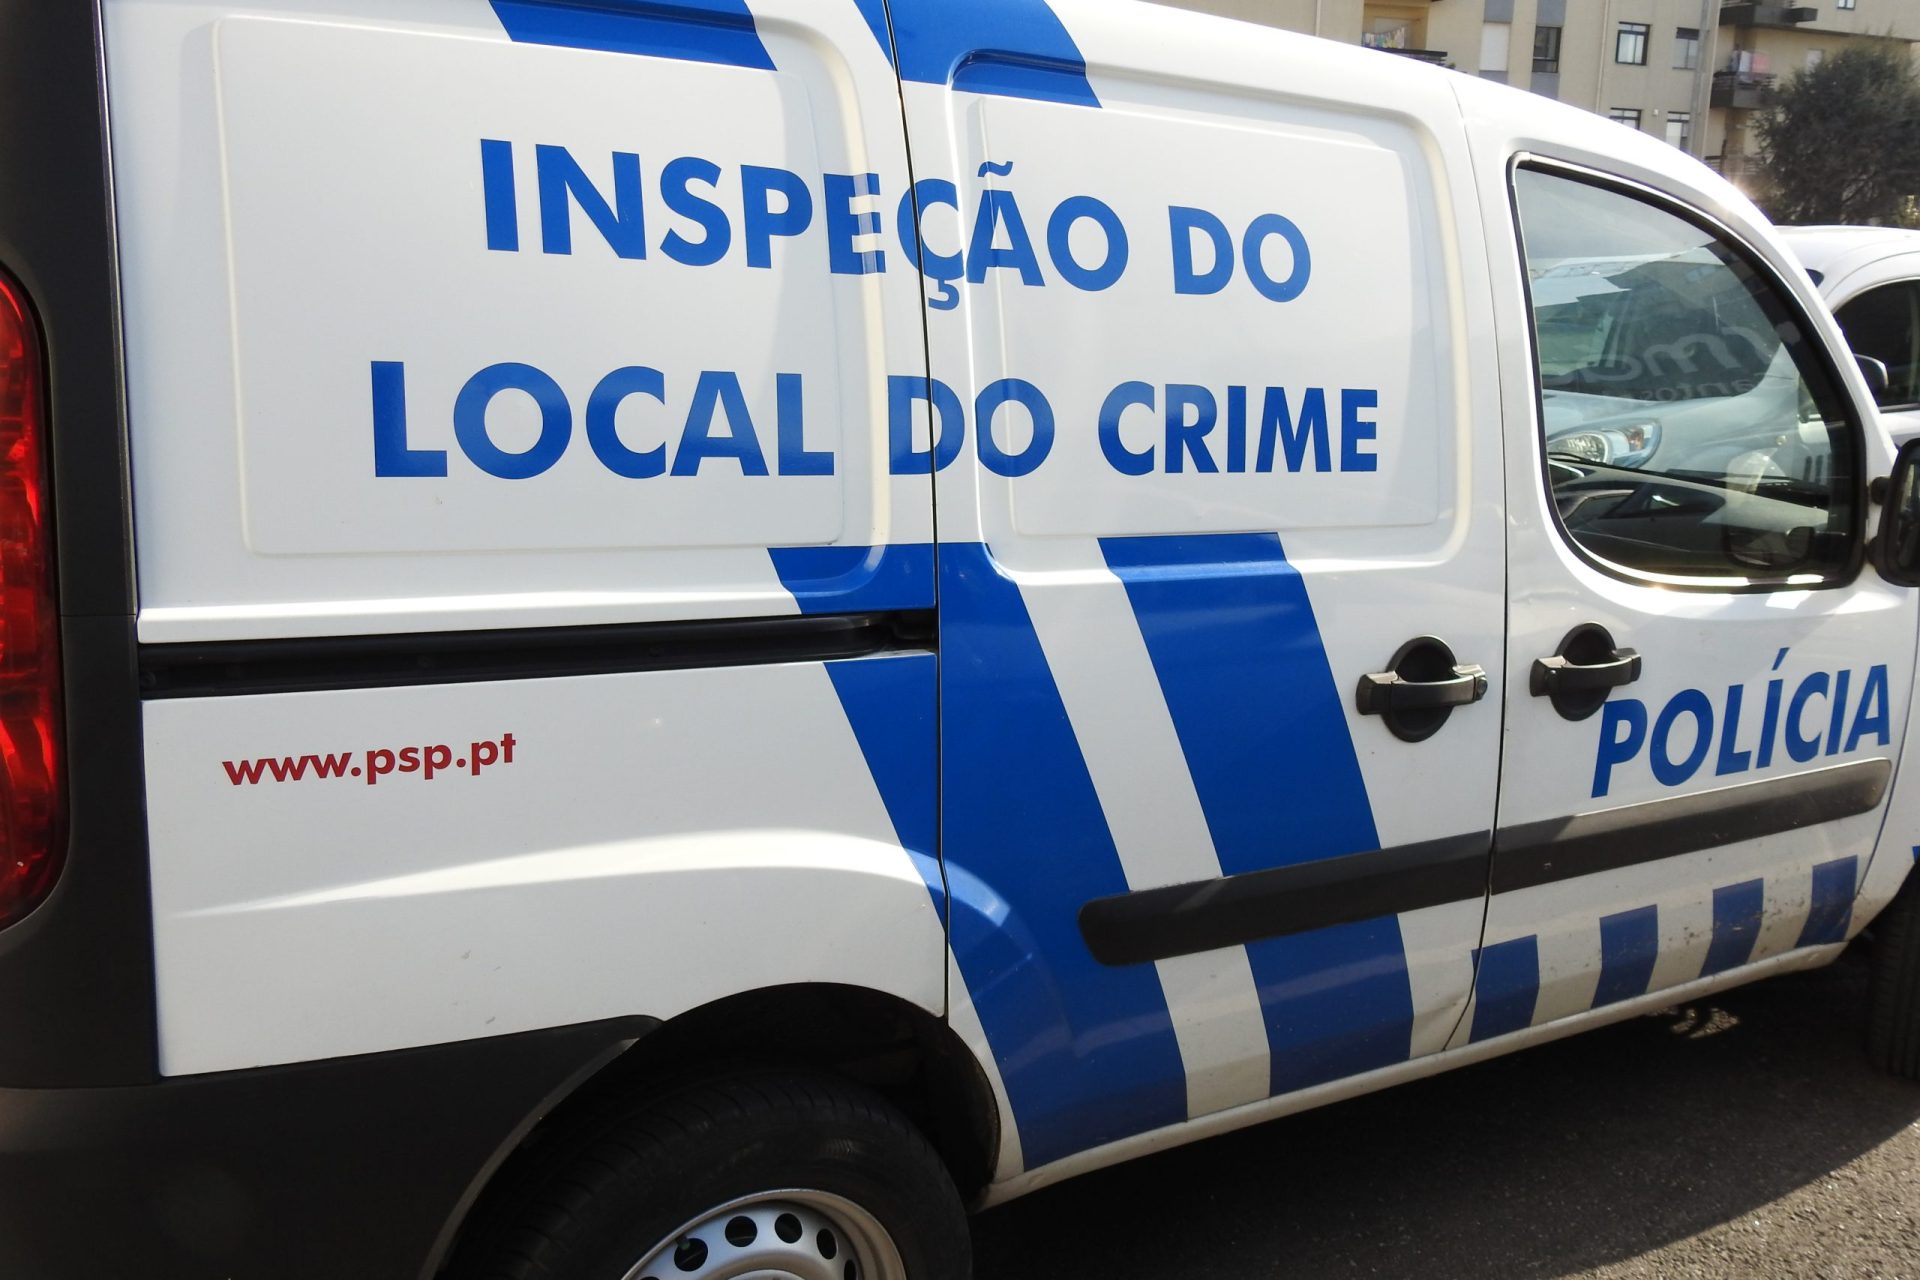 Homens acusados de cinco assaltos ficam em prisão preventiva em Viana do Castelo